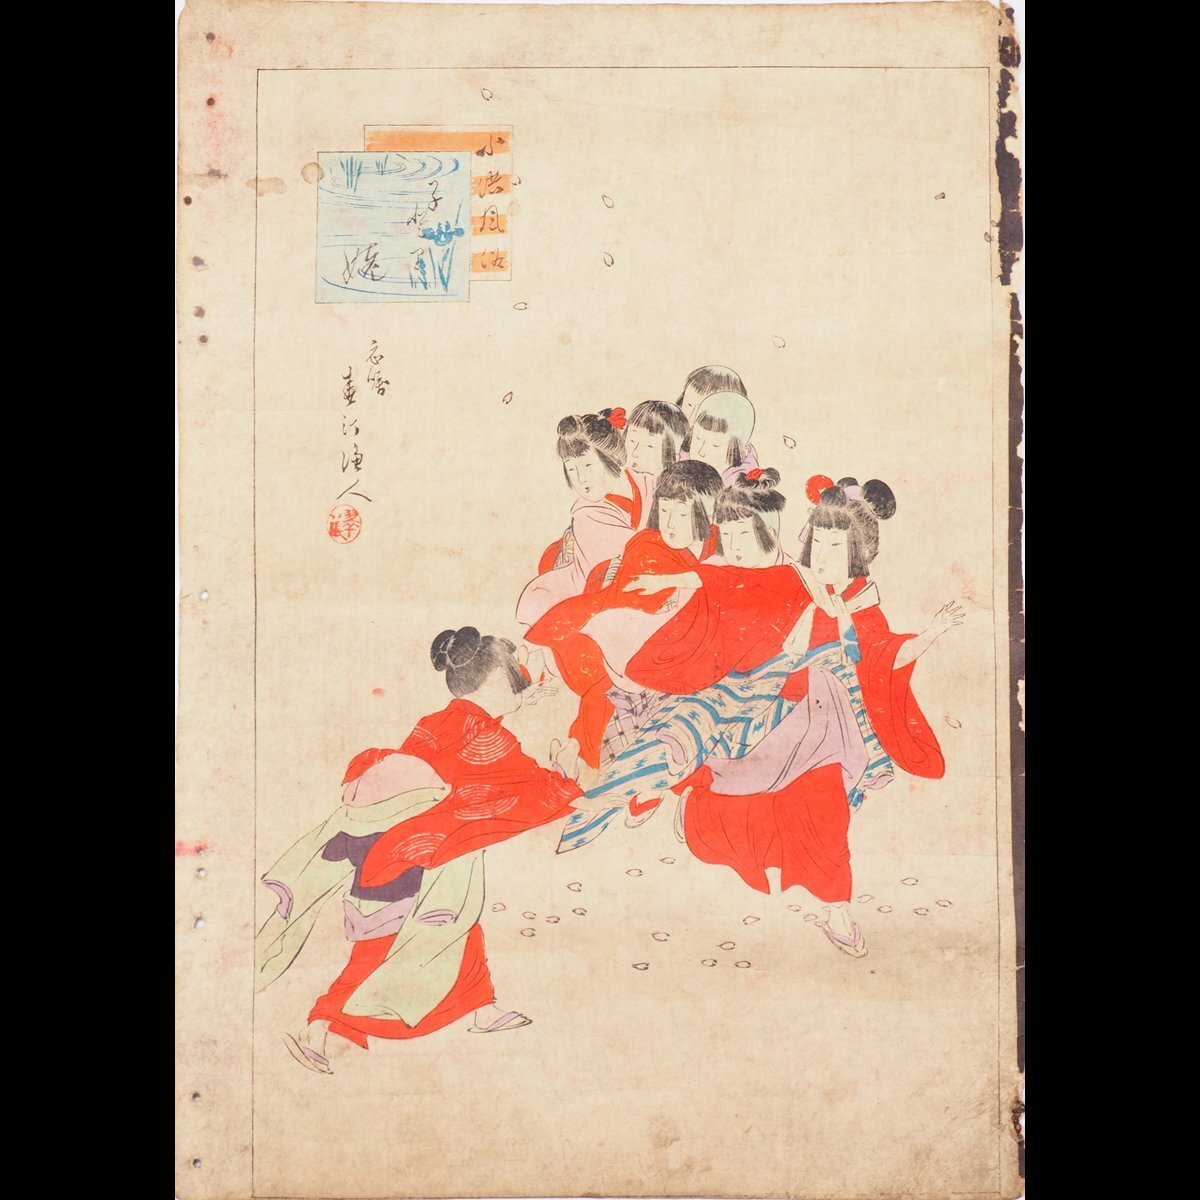 [Drucken] [Tokaan] [Shuntei Miyagawa] 14794 Rollholzschnitt 2 Blatt Taschenbuch Figurenmalerei Ukiyo-e Signiert, Malerei, Ukiyo-e, drucken, Schöne Frau malt